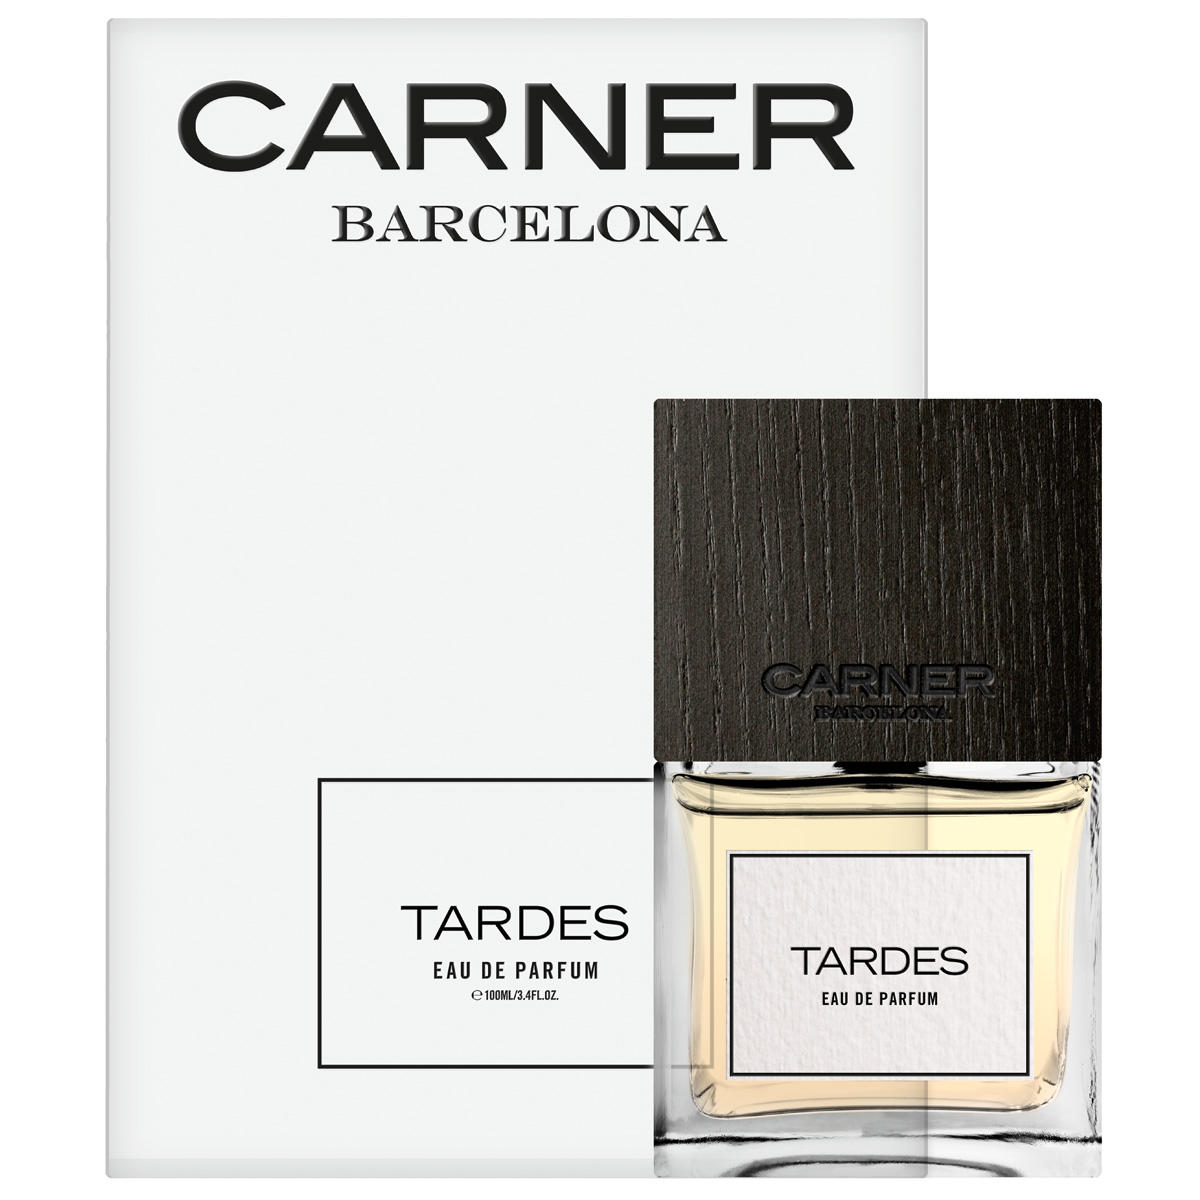 CARNER BARCELONA Tardes Eau de Parfum 100 ml - 2